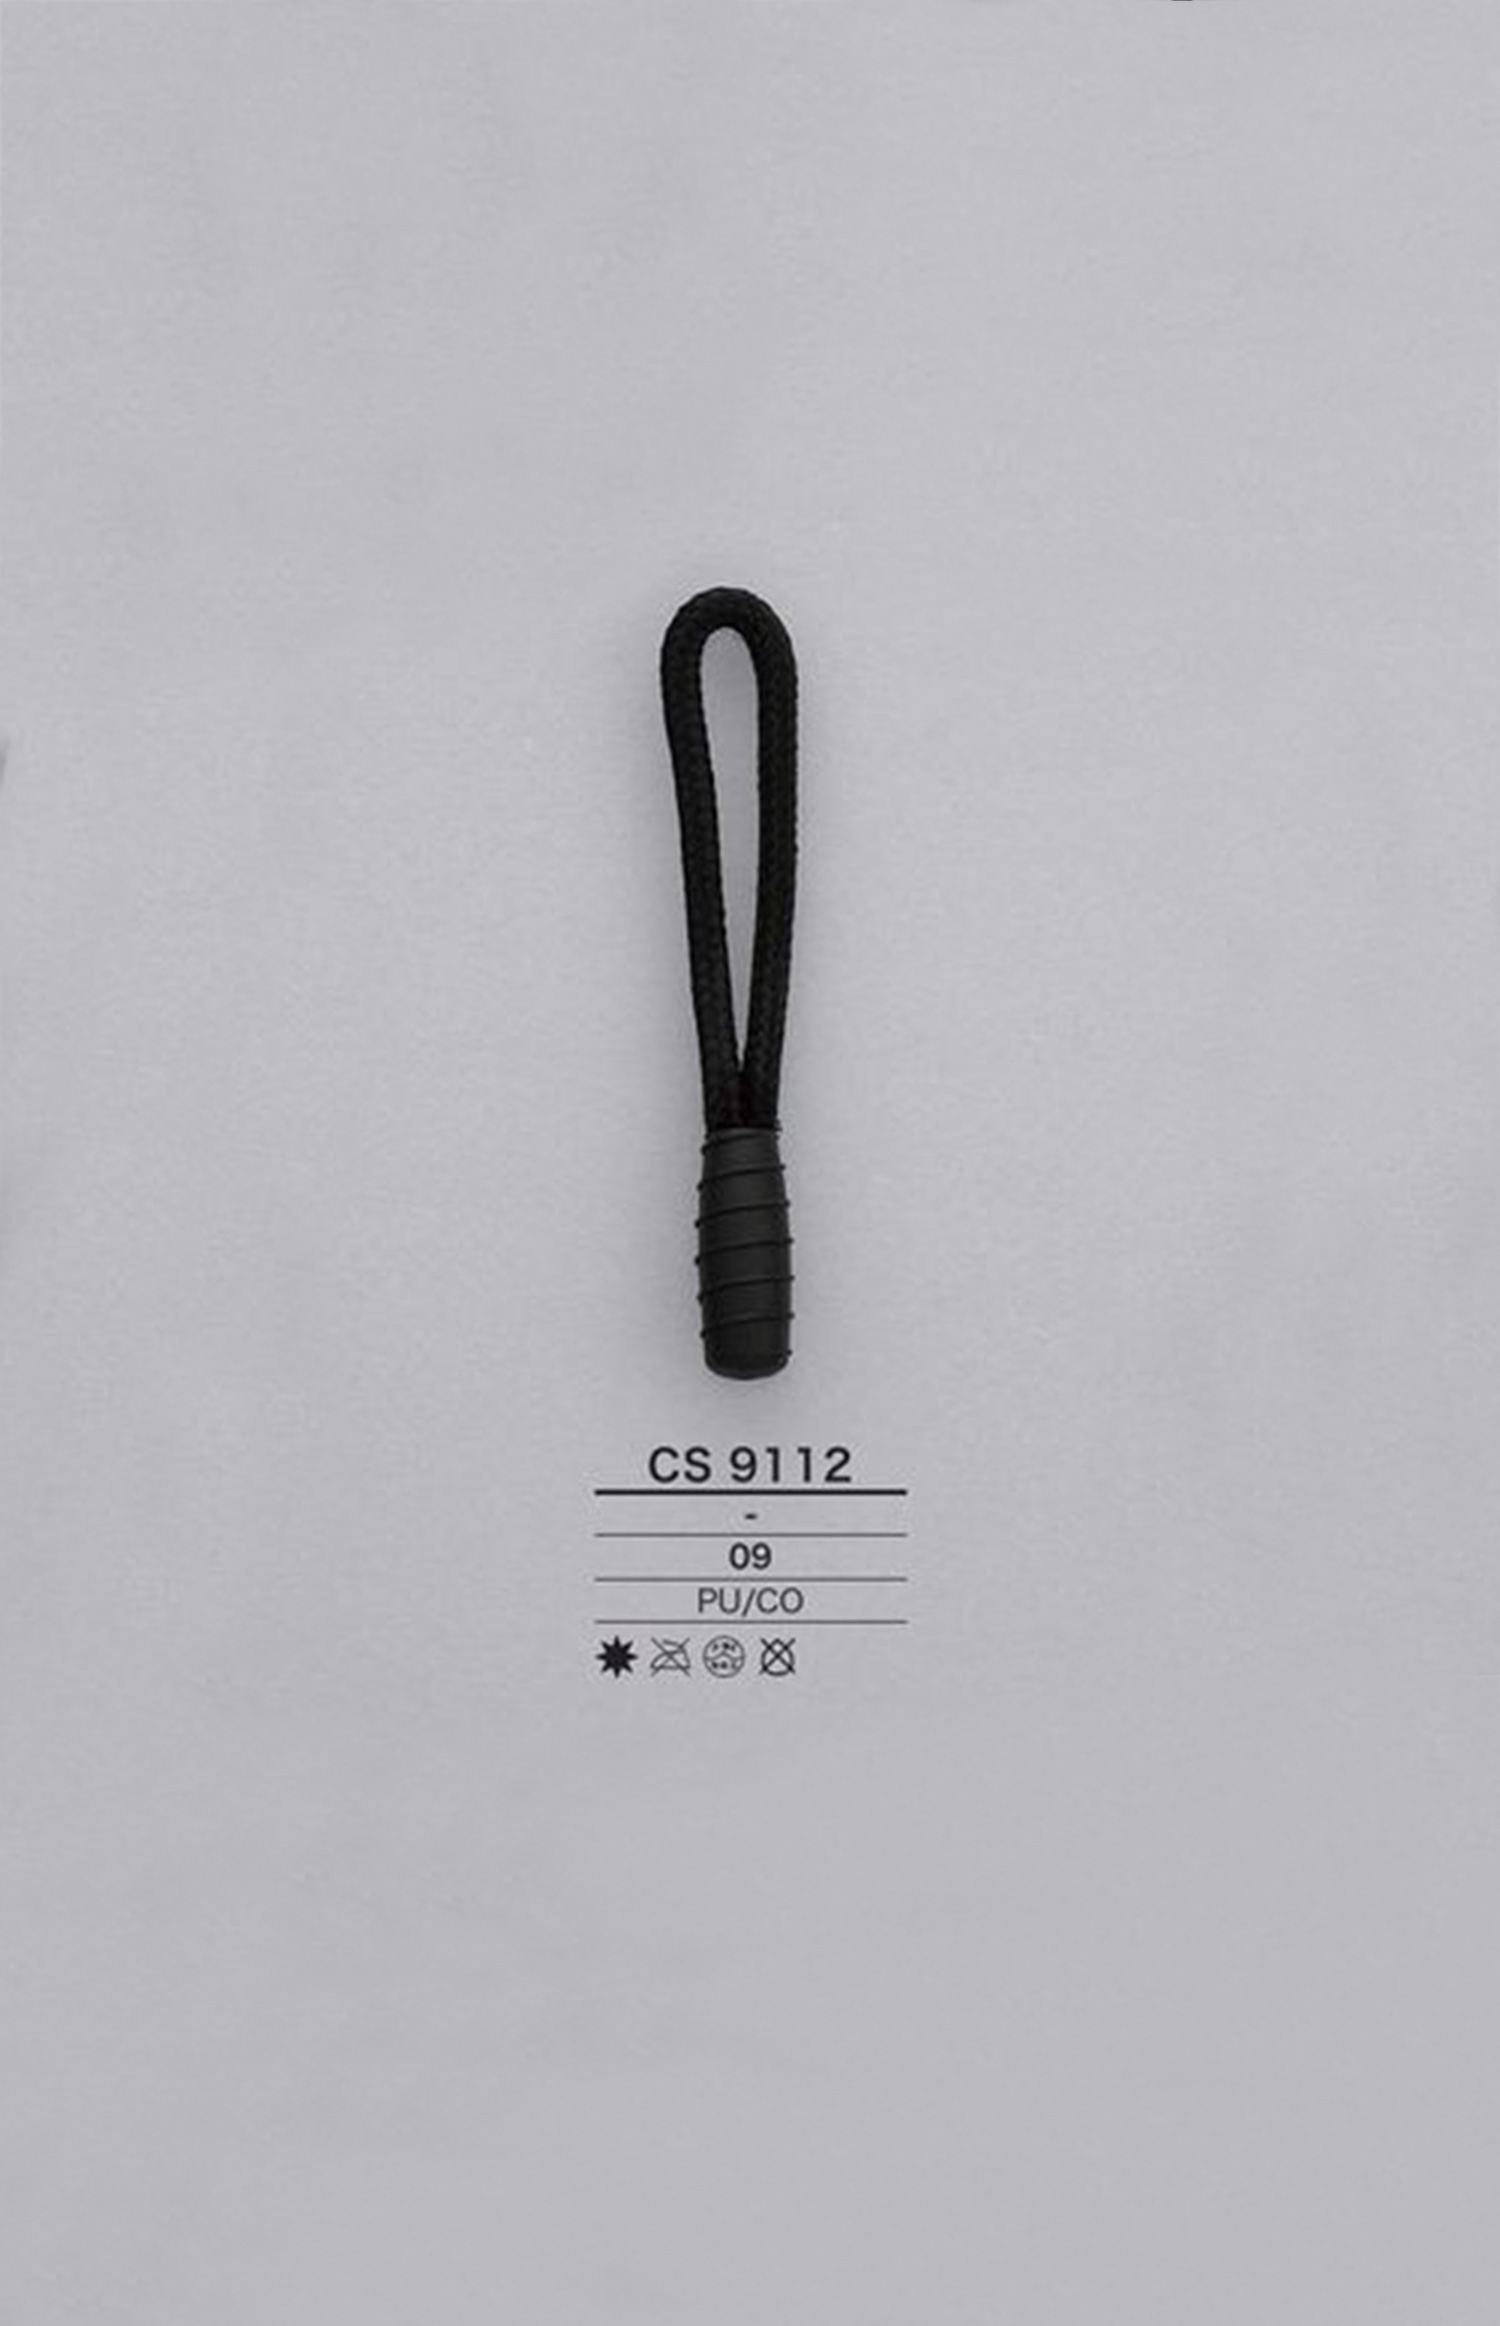 CS9112 Cord Zipper Point (Pull Tab) IRIS